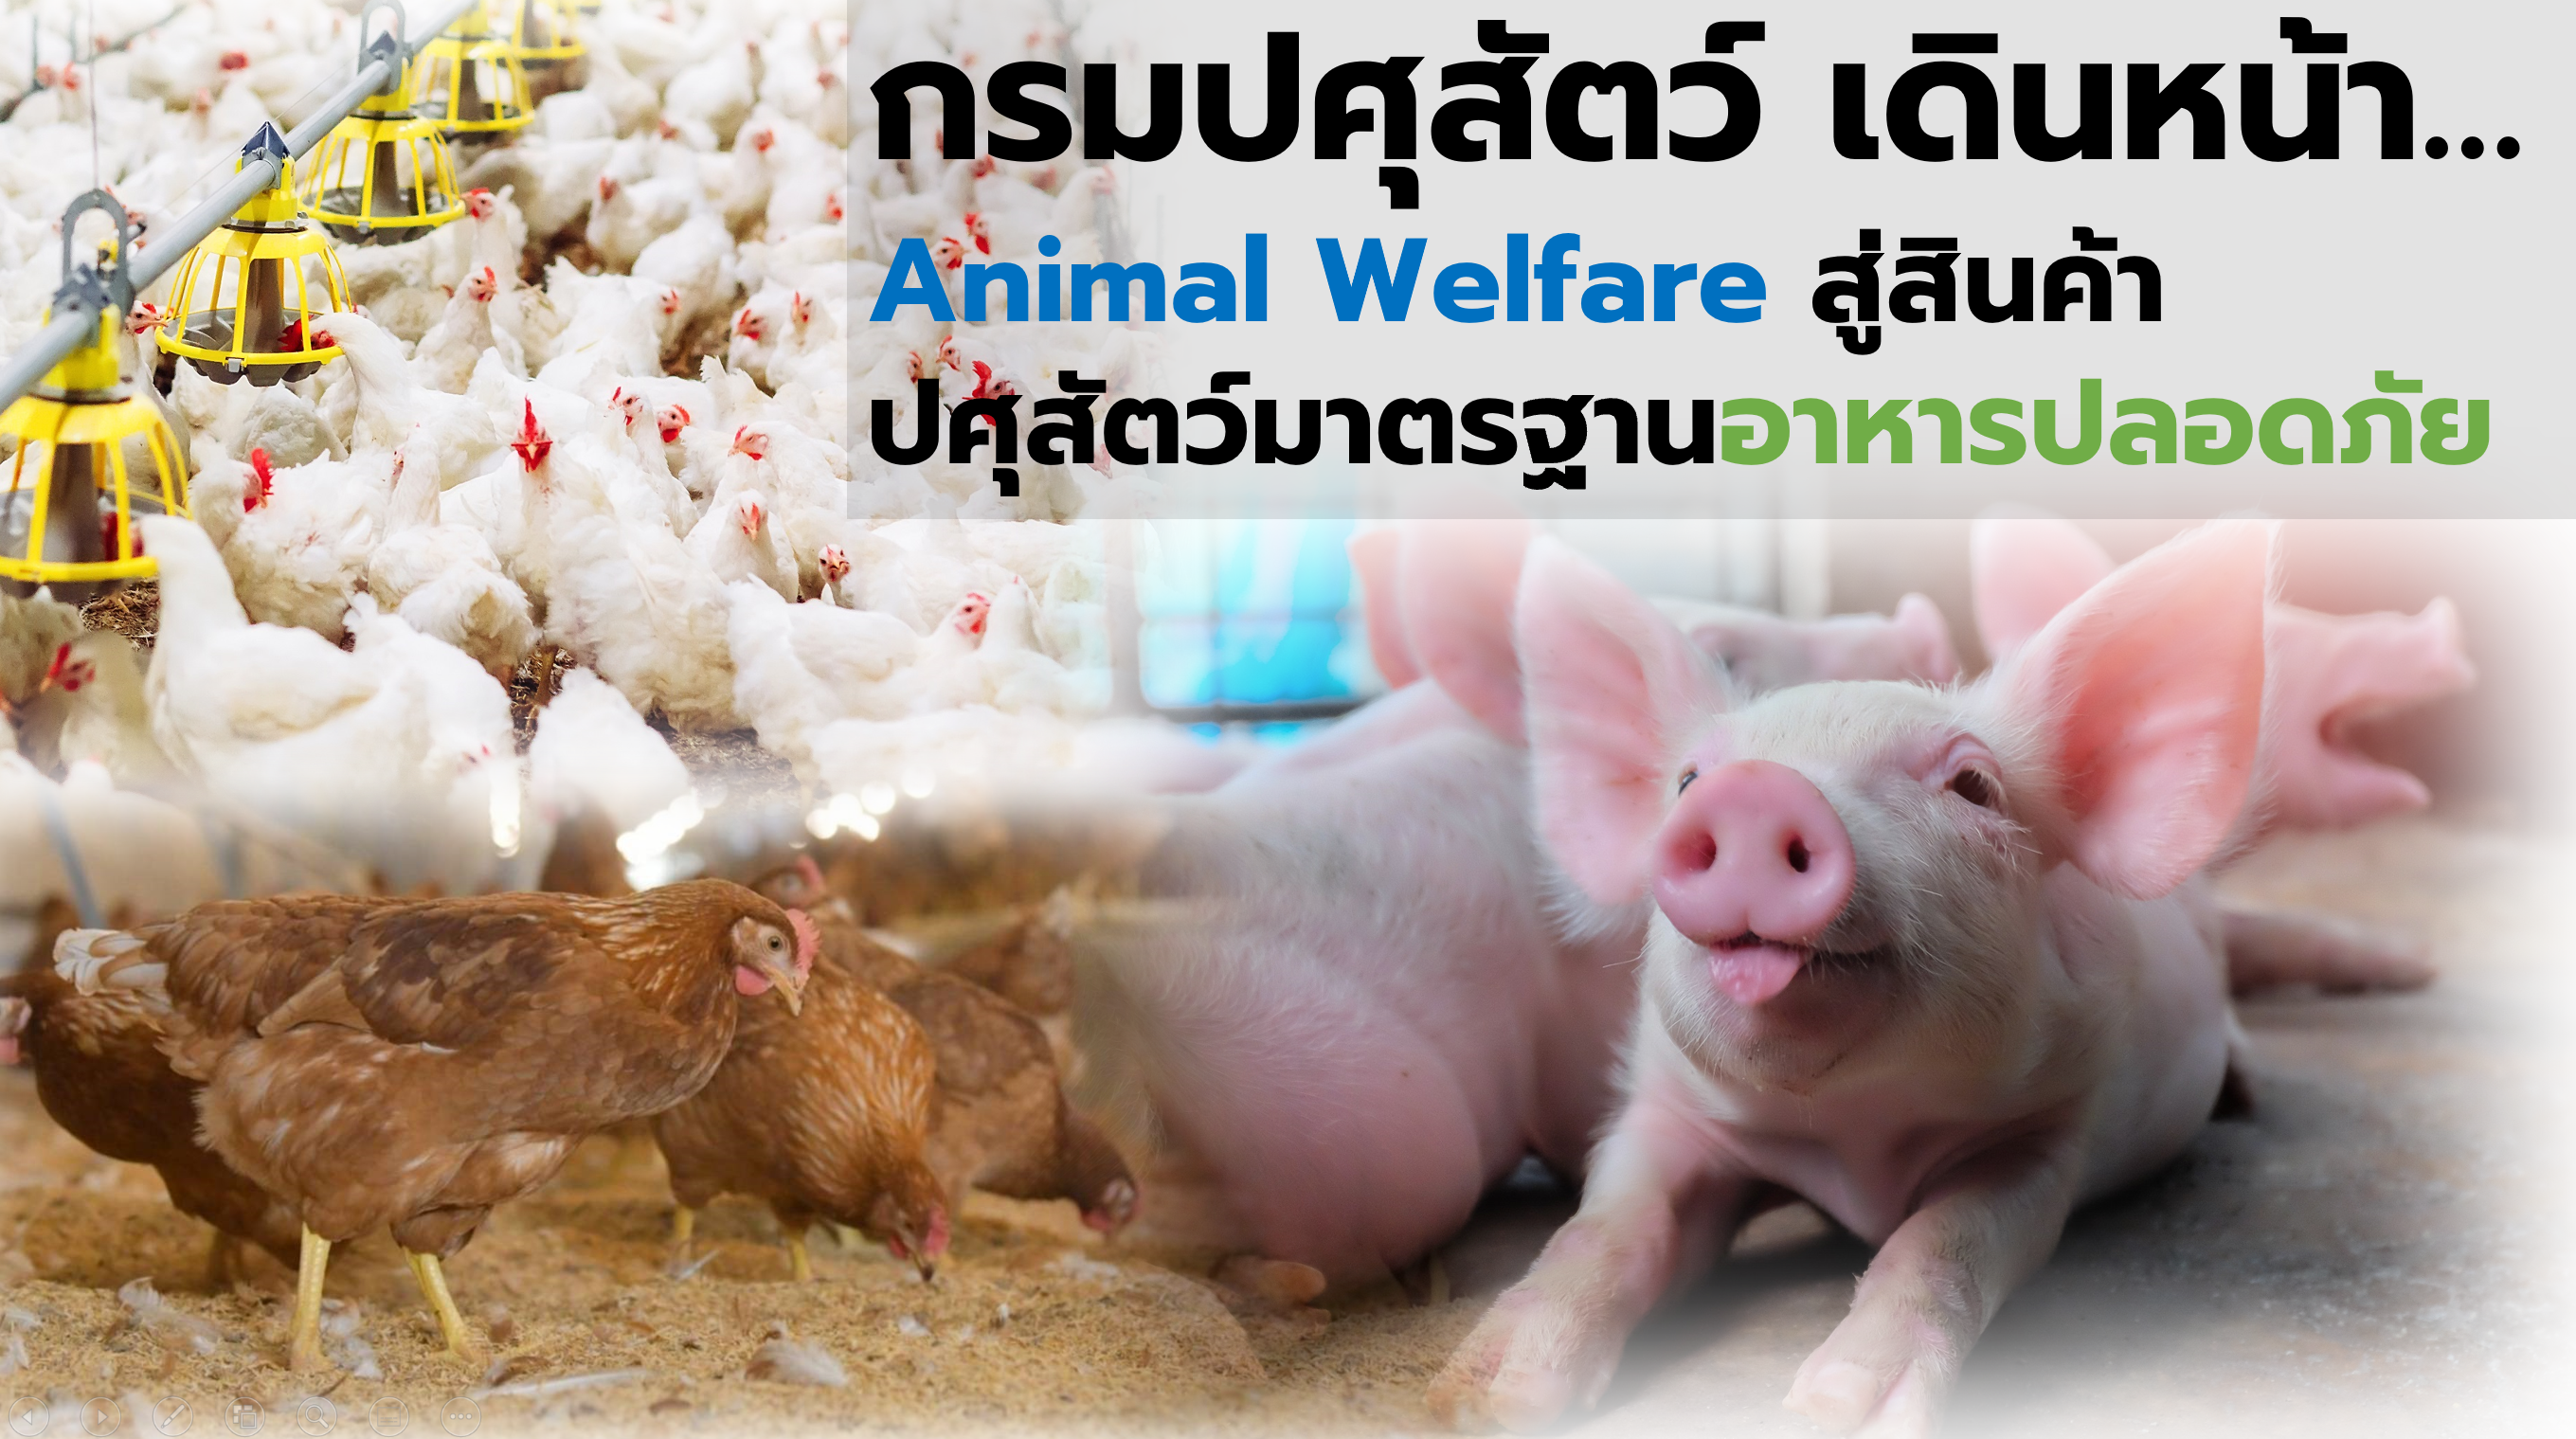 กรมปศุสัตว์ เดินหน้า Animal Welfare สู่สินค้าปศุสัตว์มาตรฐานอาหารปลอดภัย